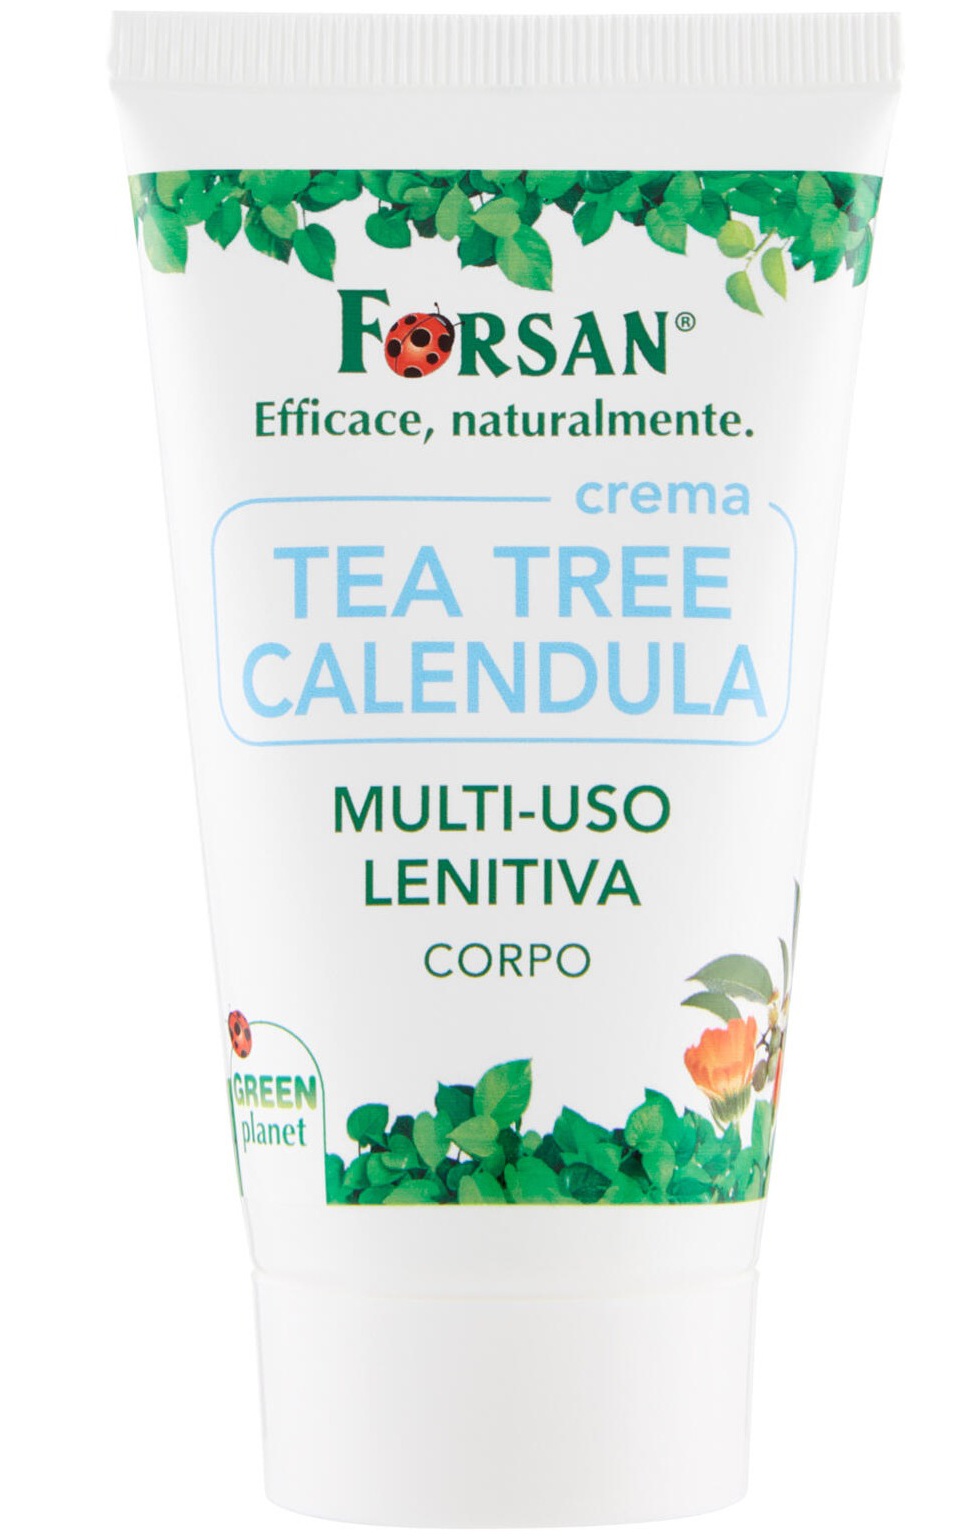 Forsan Crema Tea Tree Calendula Multi-uso Lenitiva